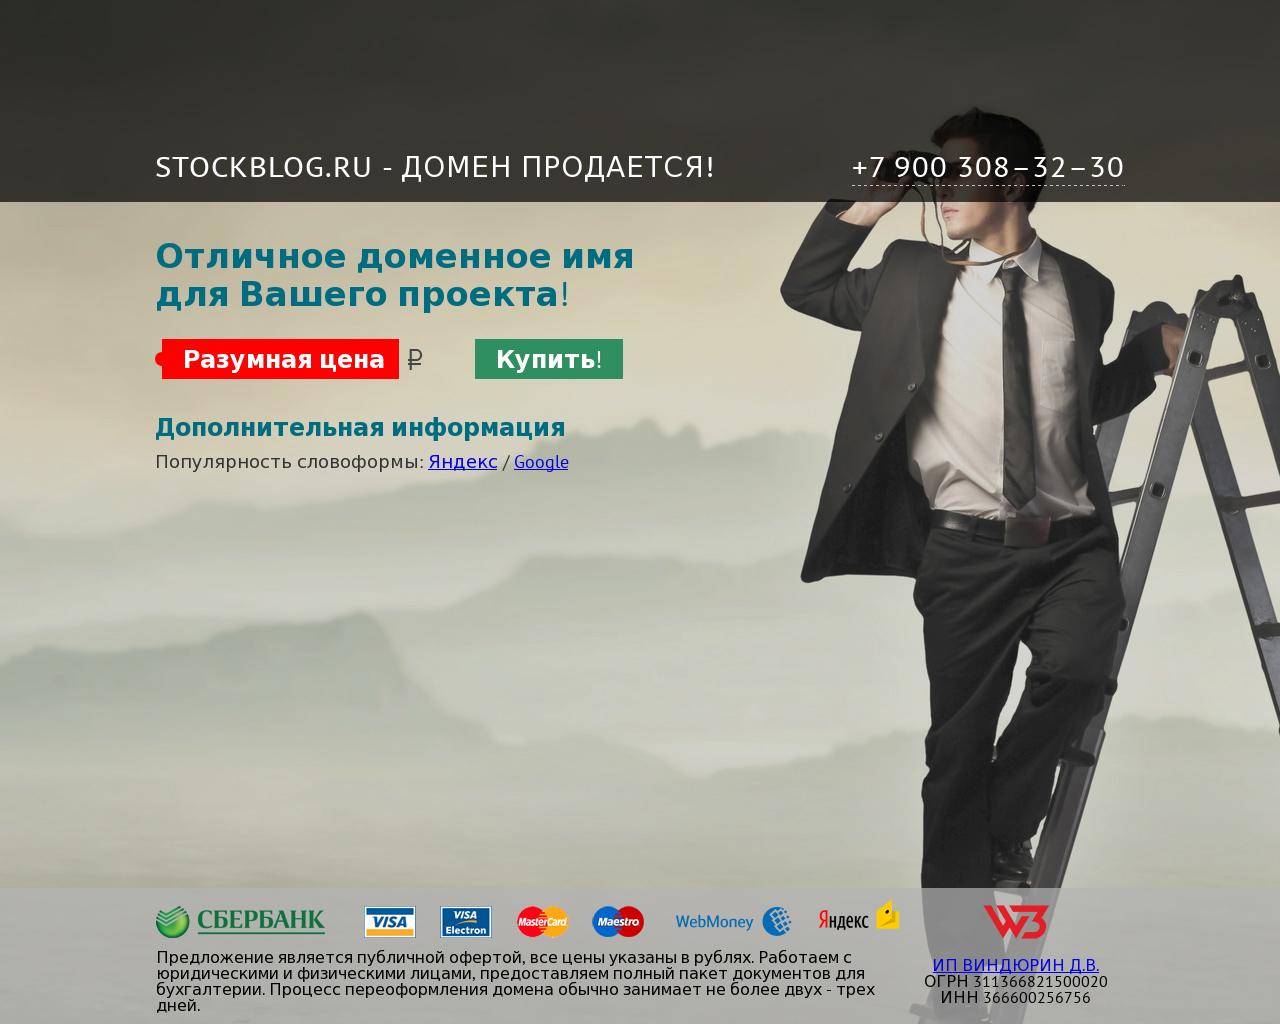 Изображение сайта stockblog.ru в разрешении 1280x1024